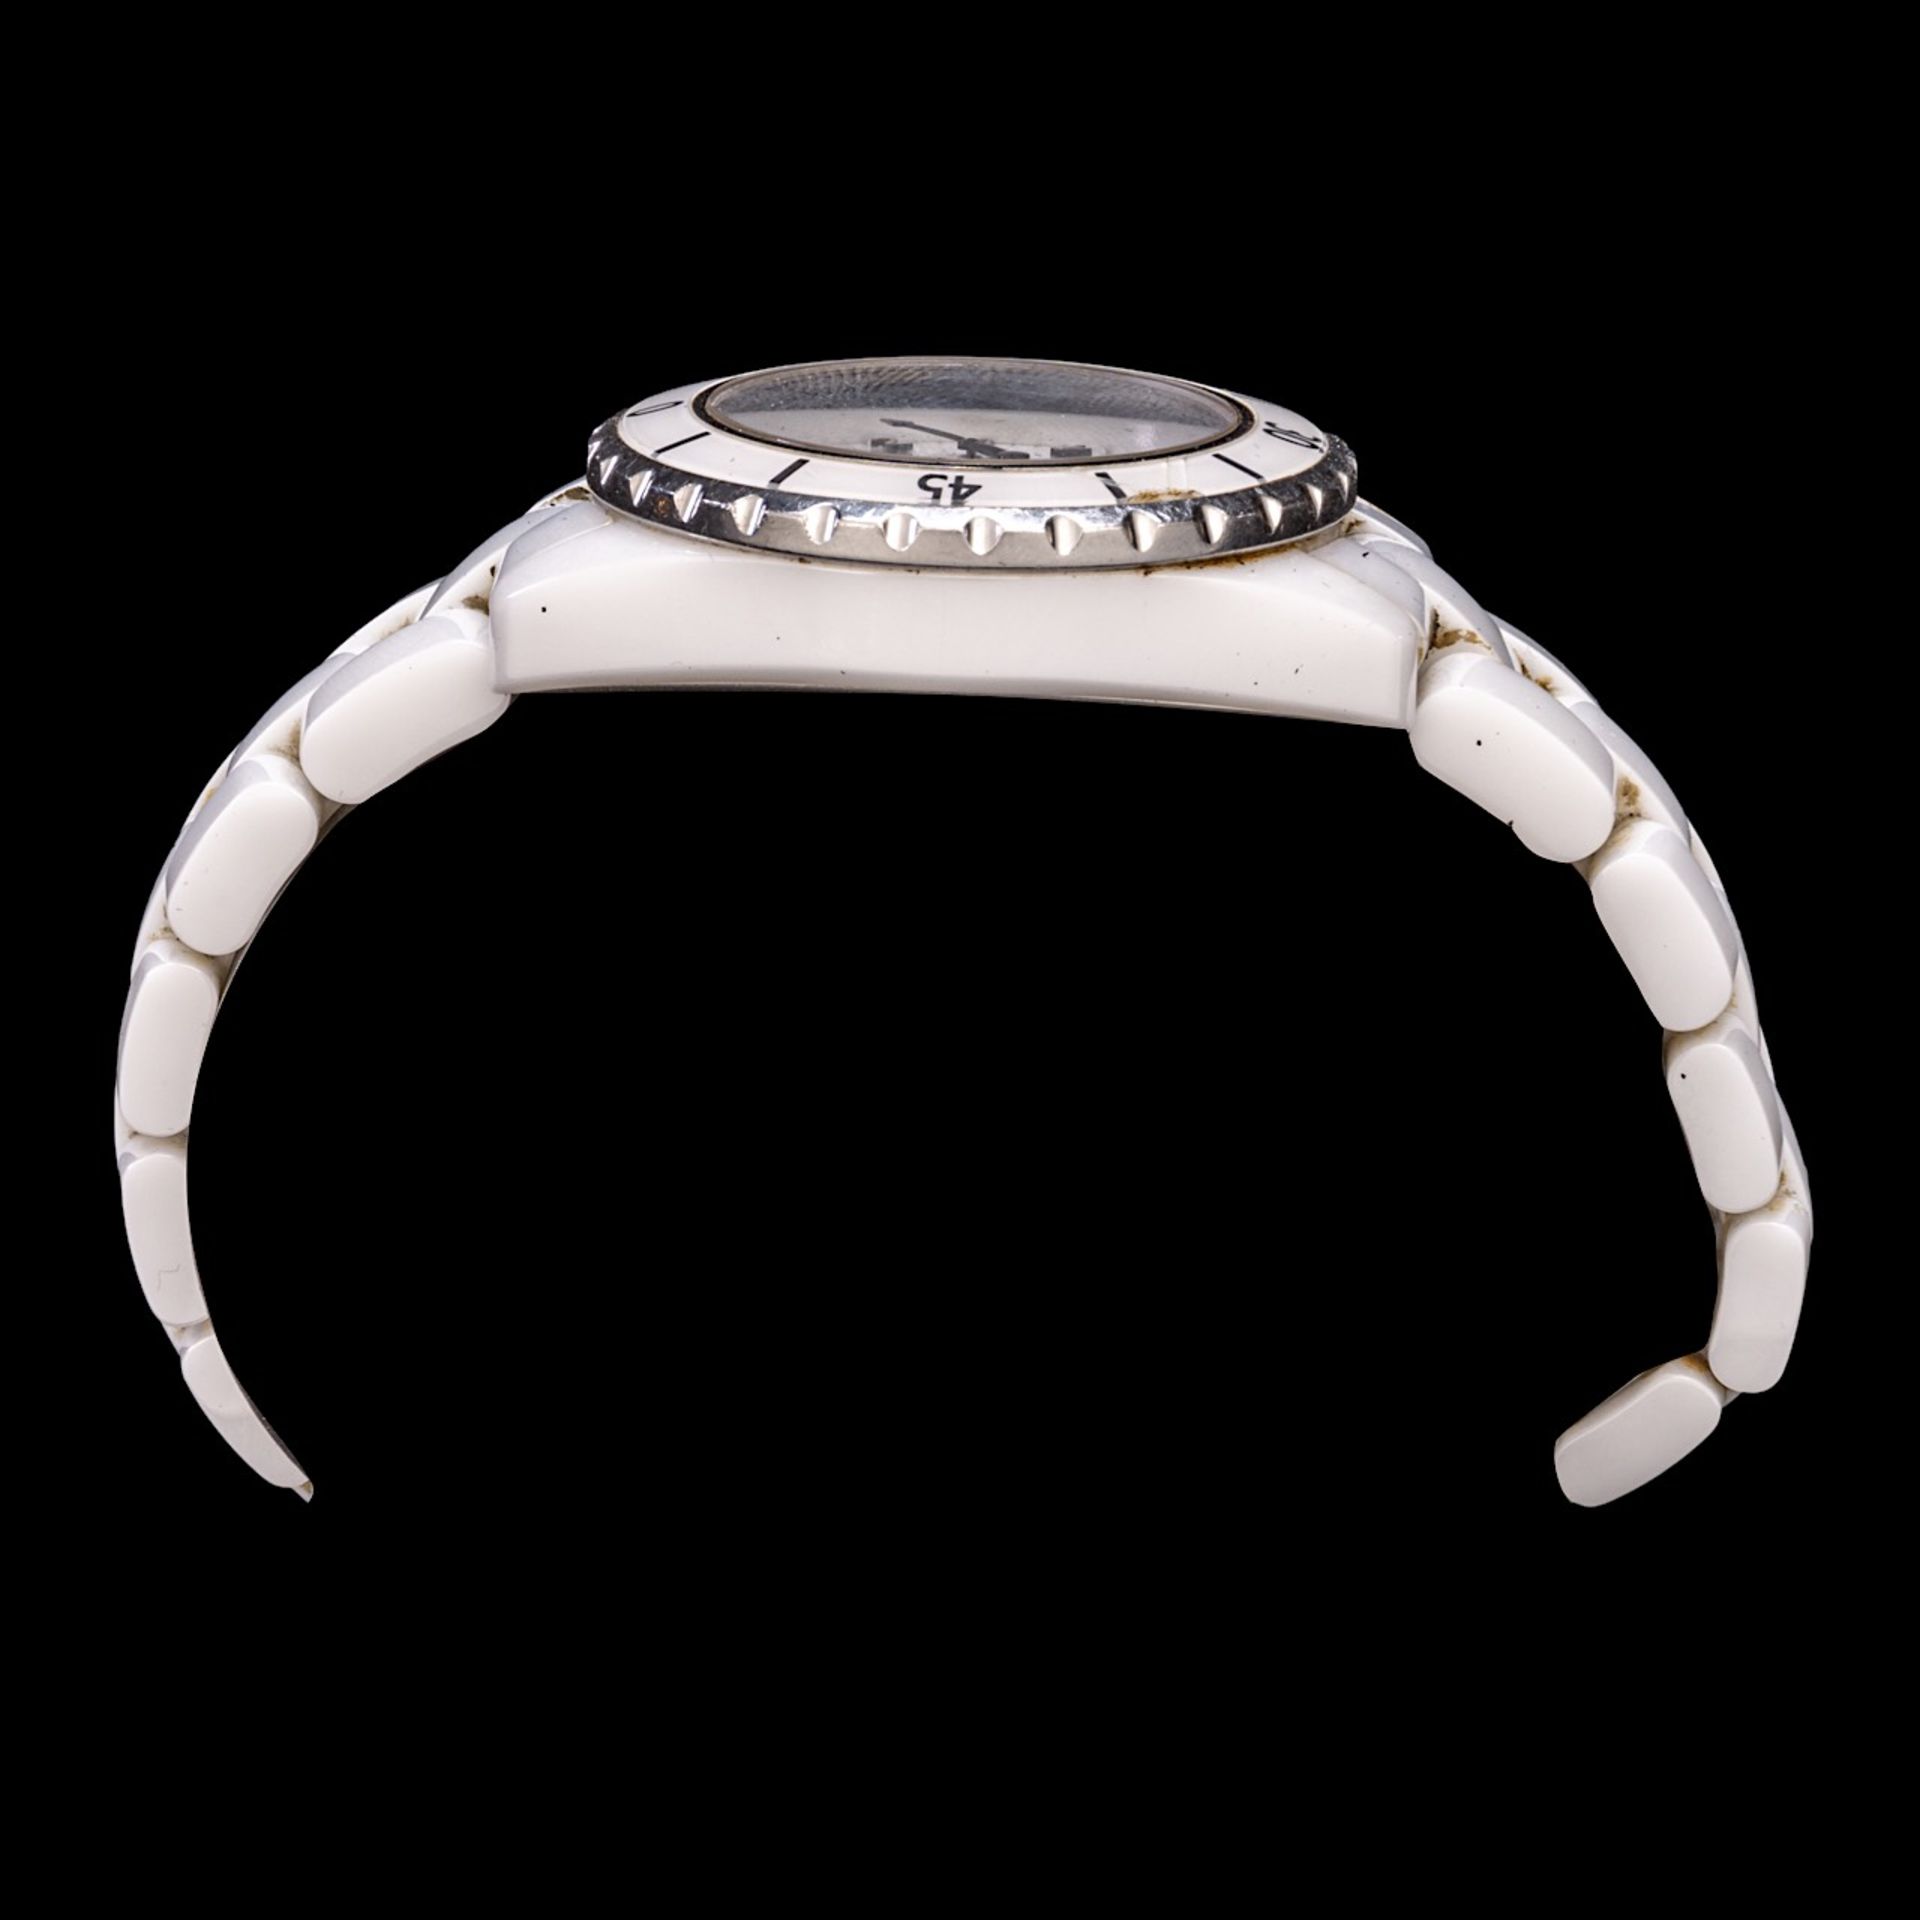 Chanel J12 Watch, white ceramic and steel, 33 mm, Ref. H5698 - Bild 5 aus 12